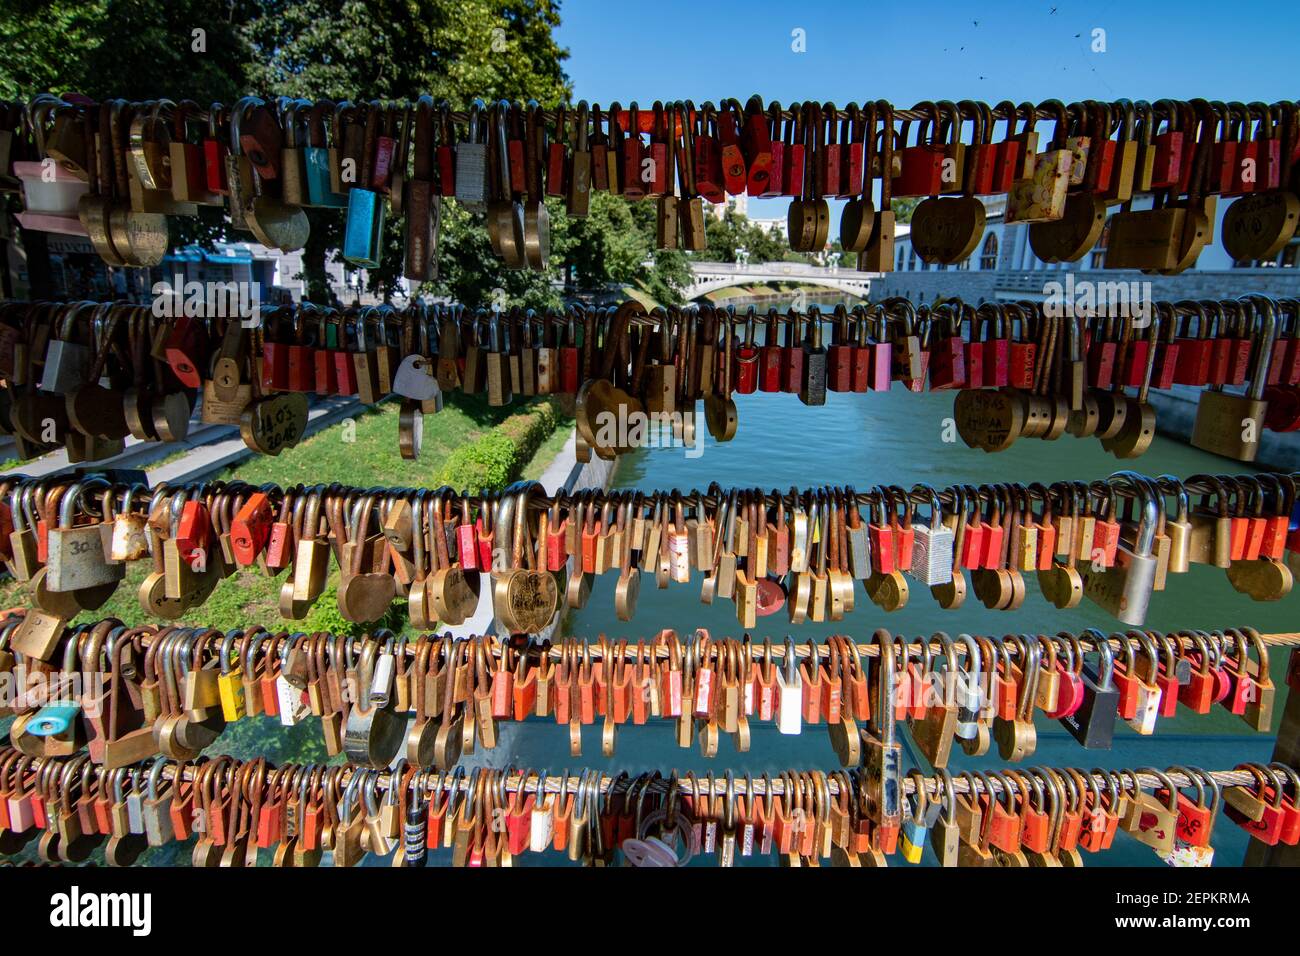 Love padlocks detail on Butcher's bridge in Ljubljana, Slovenia Stock Photo